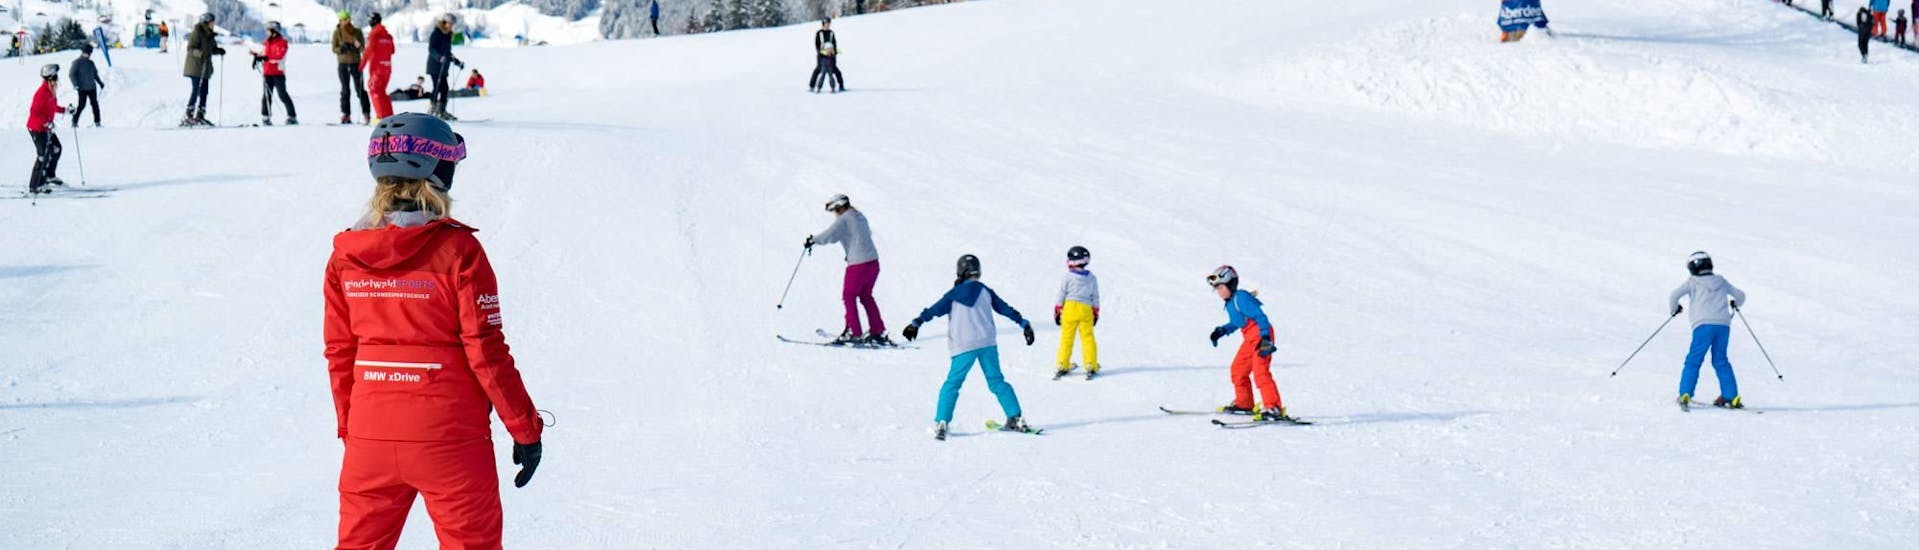 Une famille s'amuse pendant le Cours de ski "Family Fun Day" avec luge avec l'École Suisse de Ski Grindelwald.